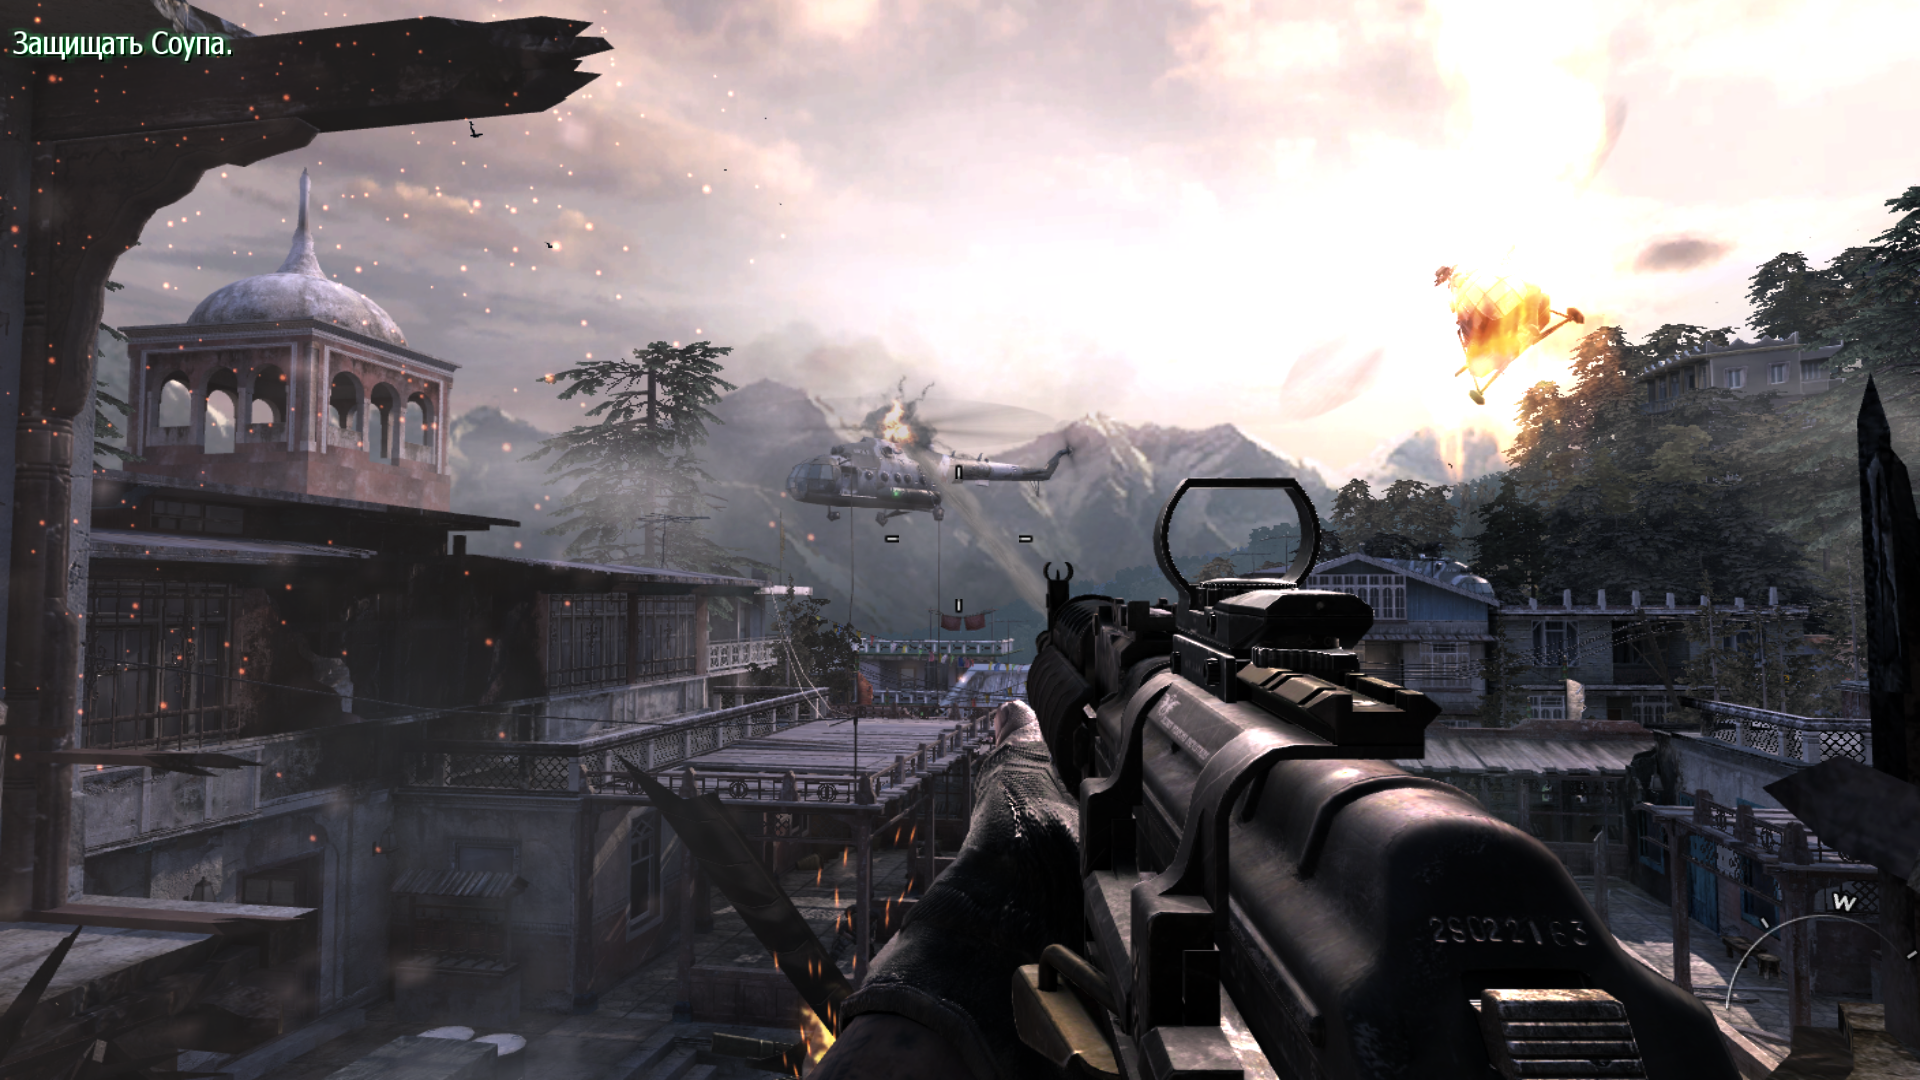 Бесплатные игры call of duty 3. Call of Duty: Modern Warfare 3. Call of Duty mw3. Калл оф дьюти Модерн варфаре 3. Калл оф дьюти Модерн варфэйр 3.